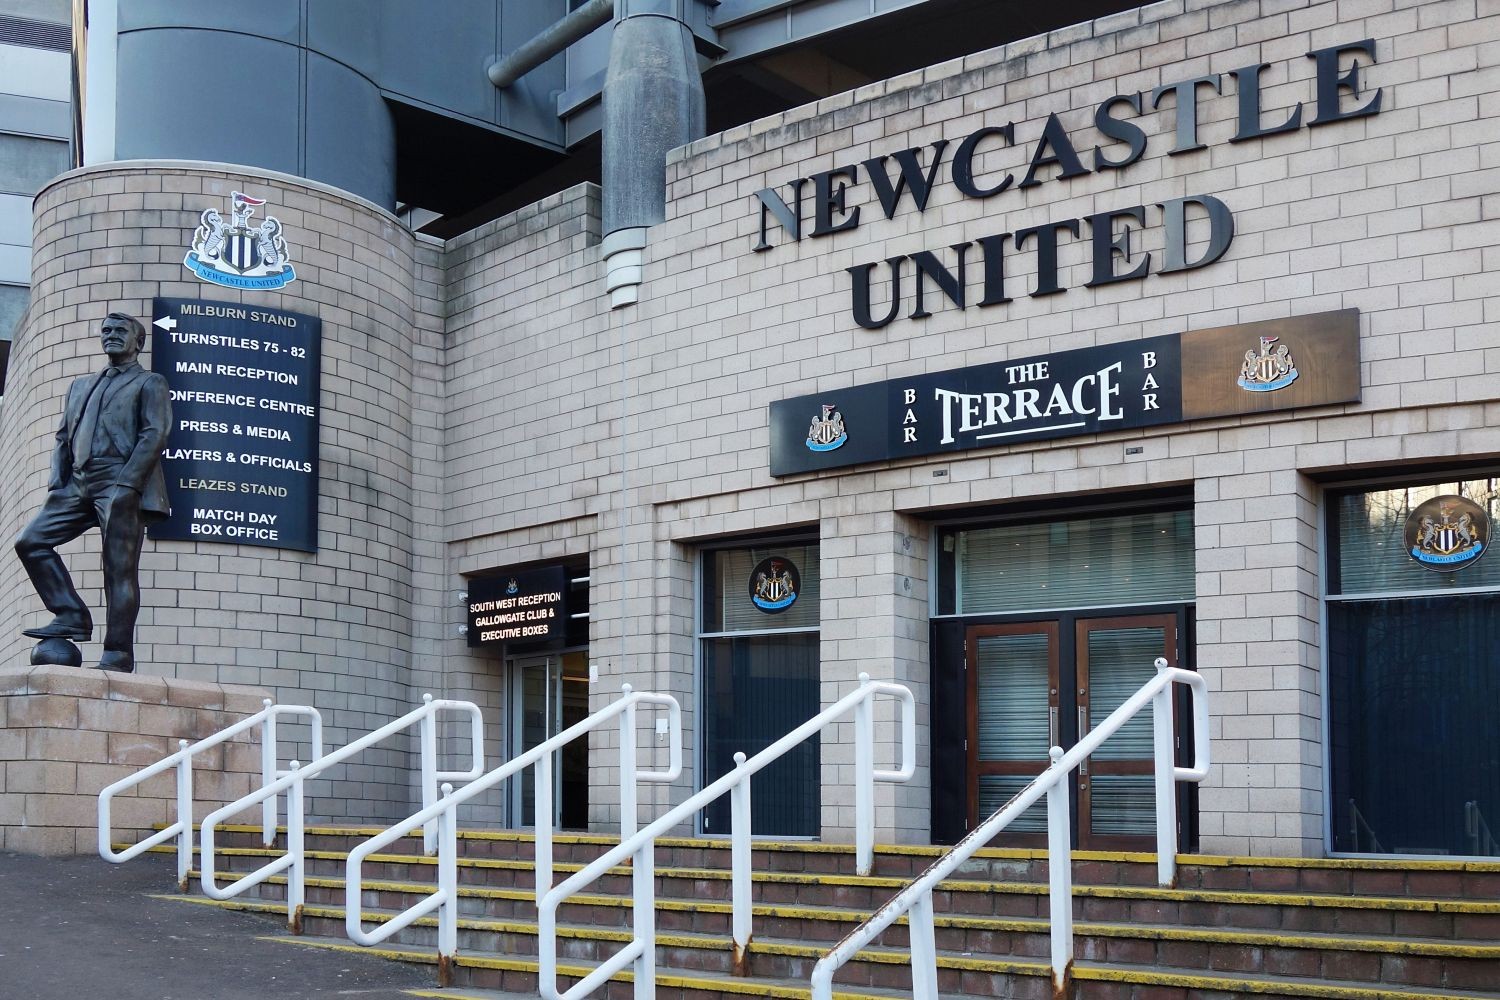 OFICJALNIE: Dan Ashworth odszedł z Brighton. Będzie najlepiej opłacanym dyrektorem w historii Newcastle United